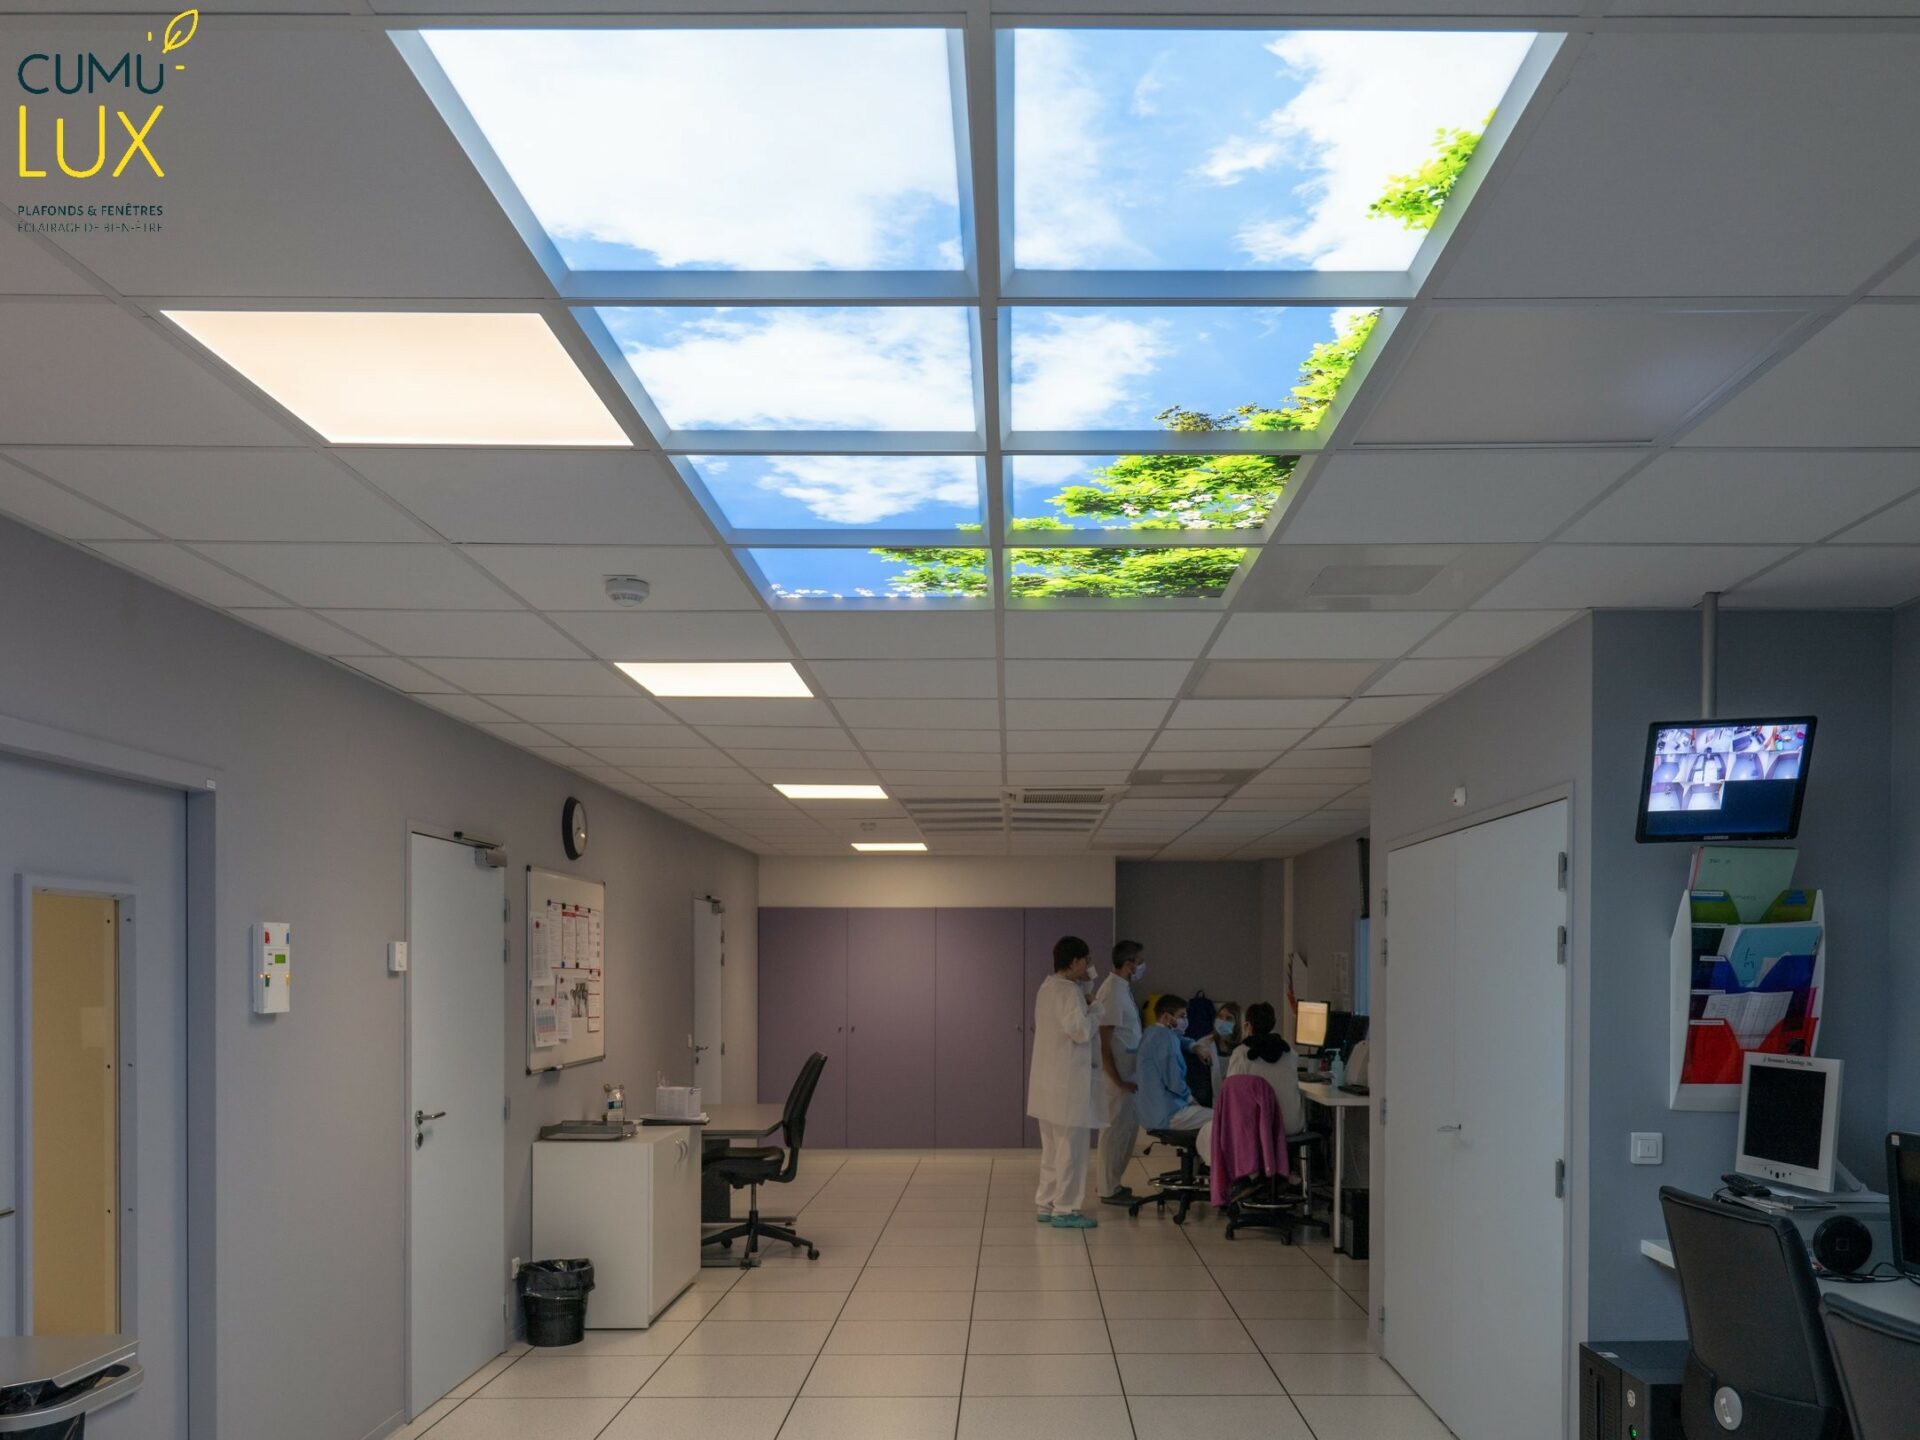 Faux plafond de 8 modules ciel Cumulux pour une salle de contrôle aveugle à l'hopital Gustave Roussy.